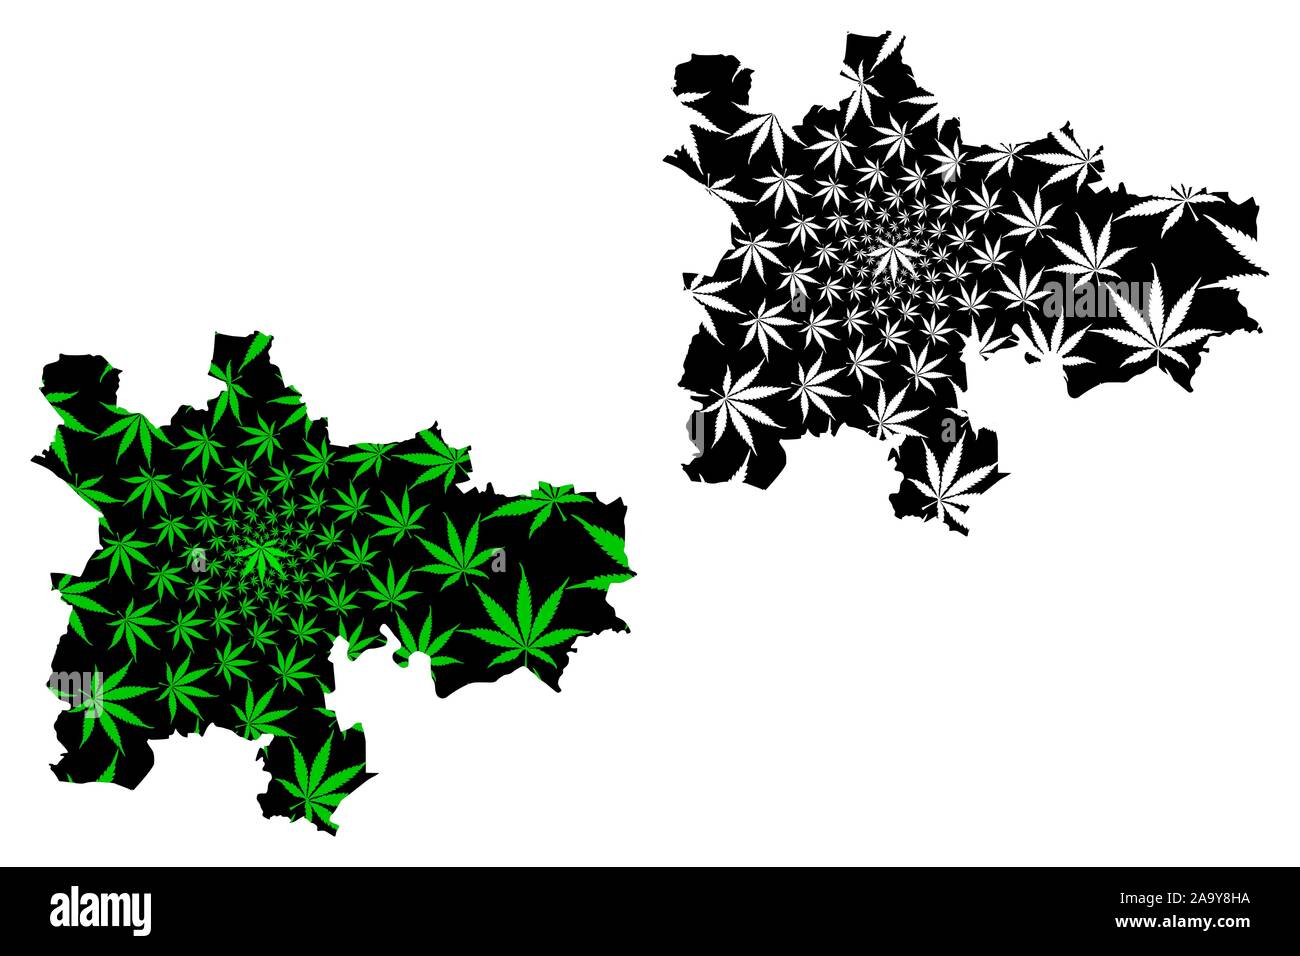 Glasgow (Regno Unito, Scozia, del governo locale in Scozia) mappa è progettato Cannabis leaf verde e nero, città e consiglio di Glasgow Area mappa Illustrazione Vettoriale